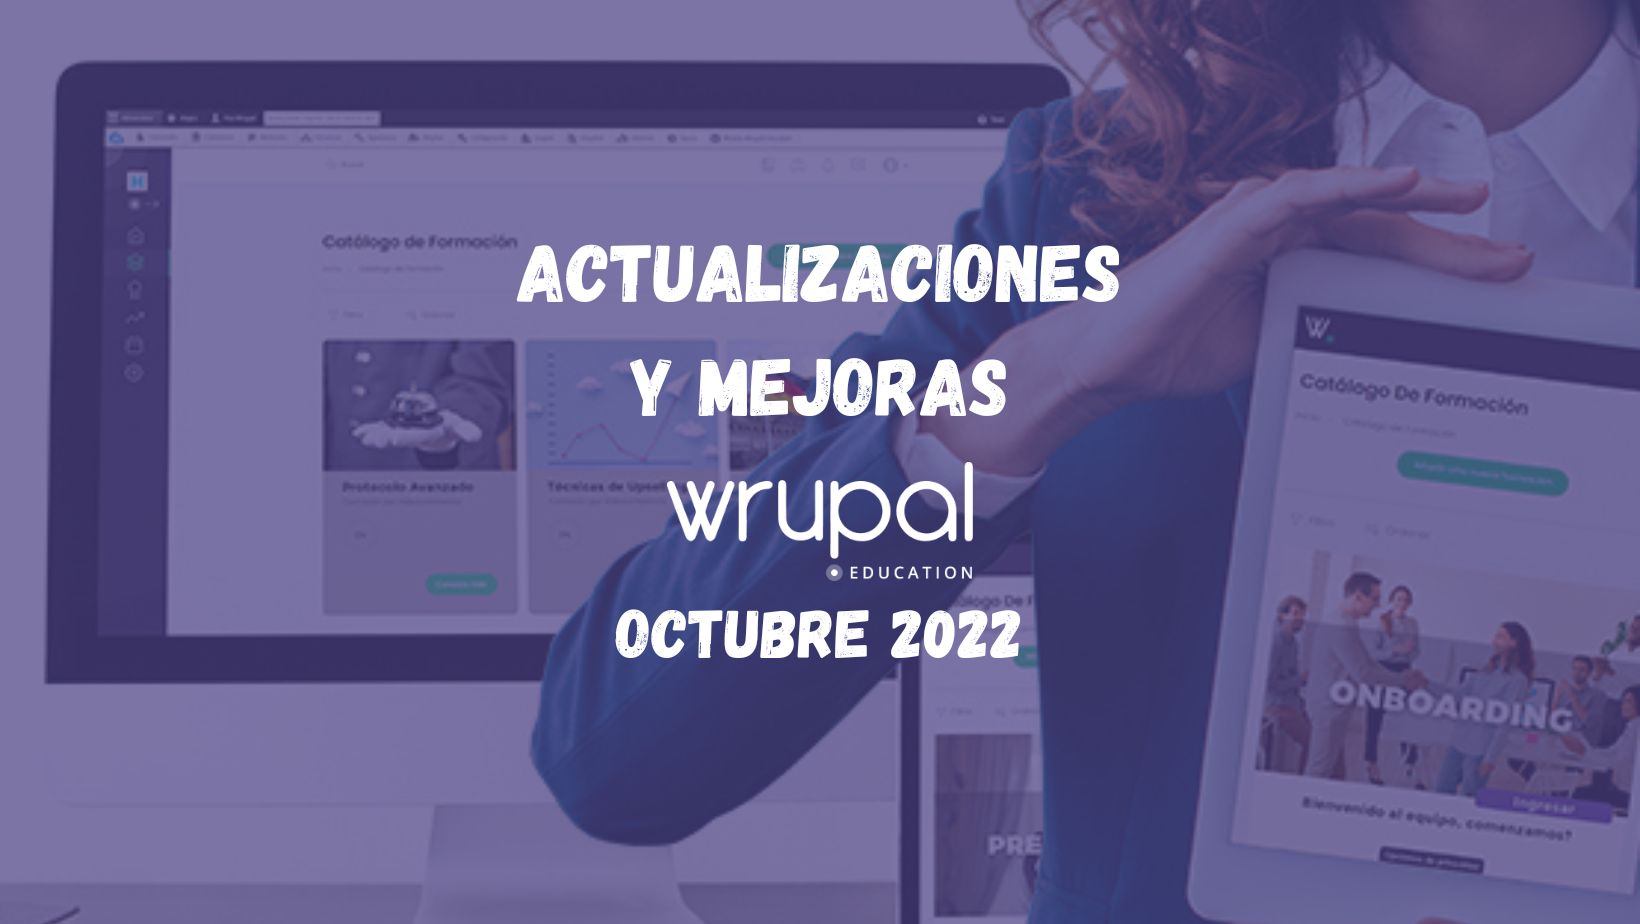 Actualizaciones y mejoras en la formación online. Wrupal Education, Octubre 2022